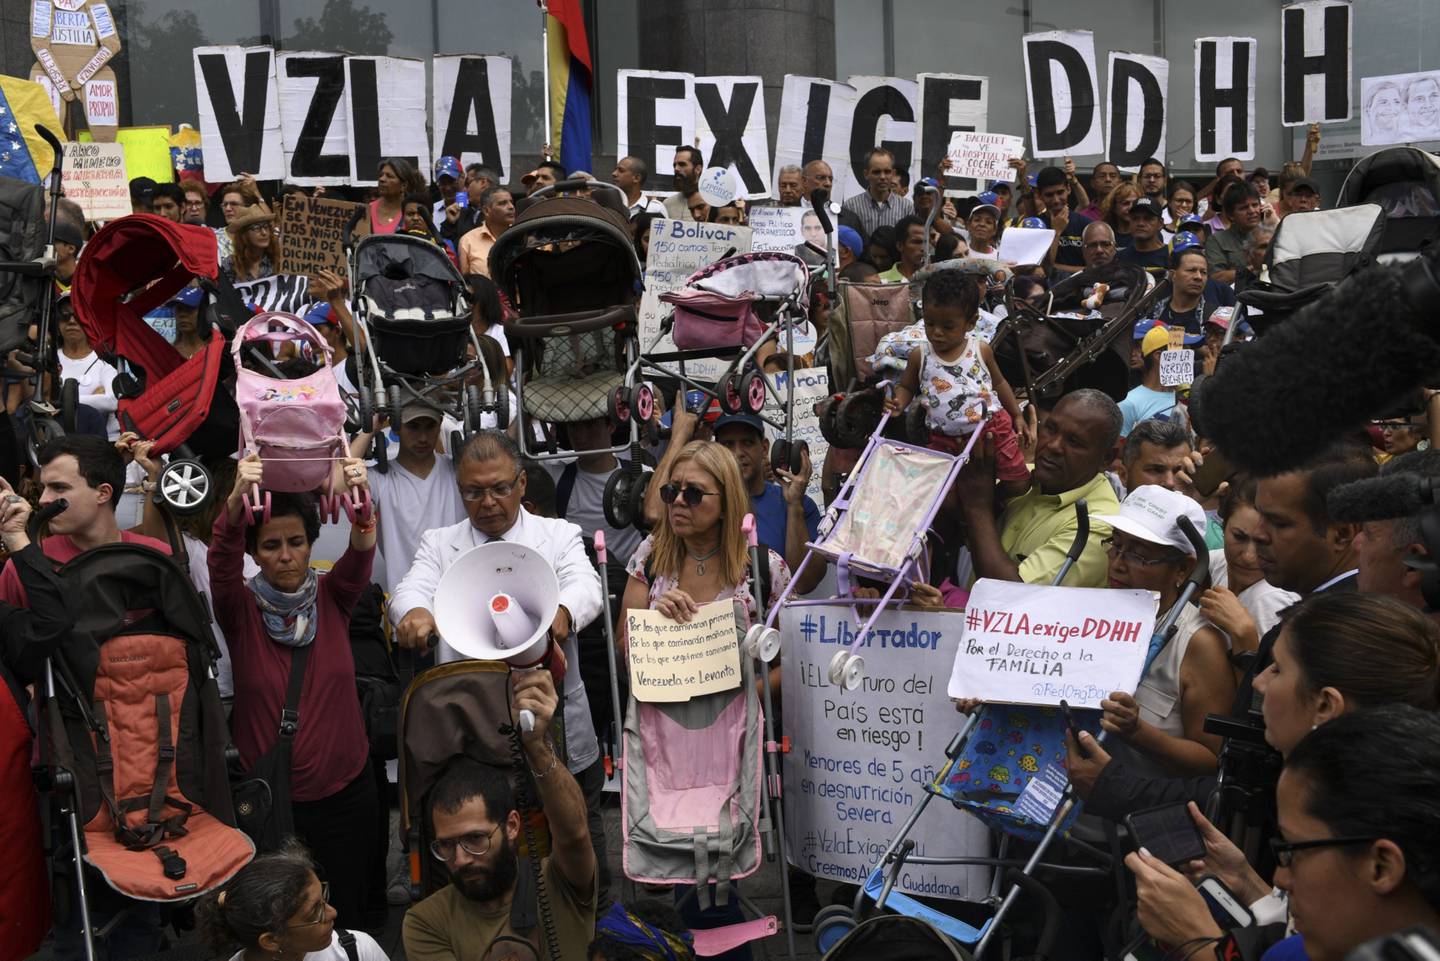 Manifestantes sostienen coches de bebé durante una protesta en el marco de la visita de Michelle Bachelet, alta comisionada para los derechos humanos de las Naciones Unidas, en la urbanización Los Palos Grandes, en Caracas, Venezuela, el viernes 21 de junio de 2019. dfd